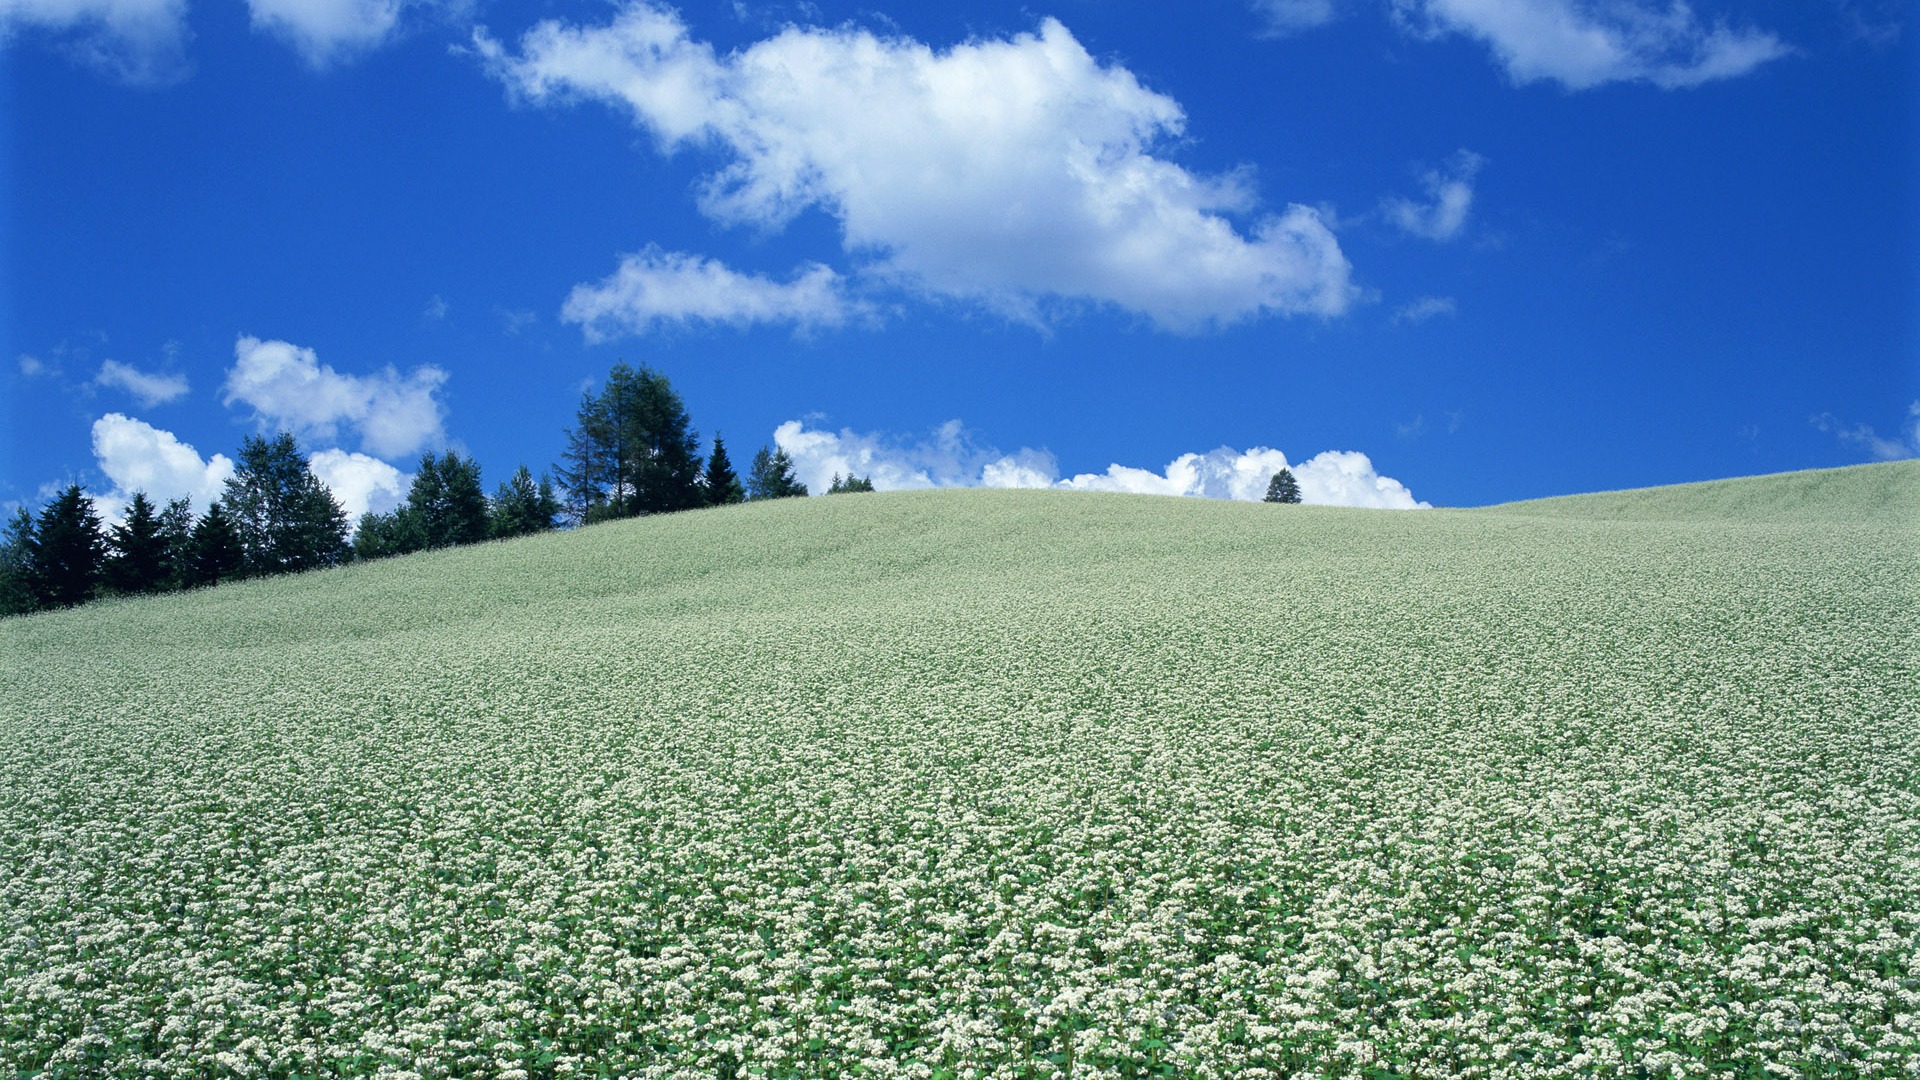 Cielo azul nubes blancas y flores papel tapiz #17 - 1920x1080